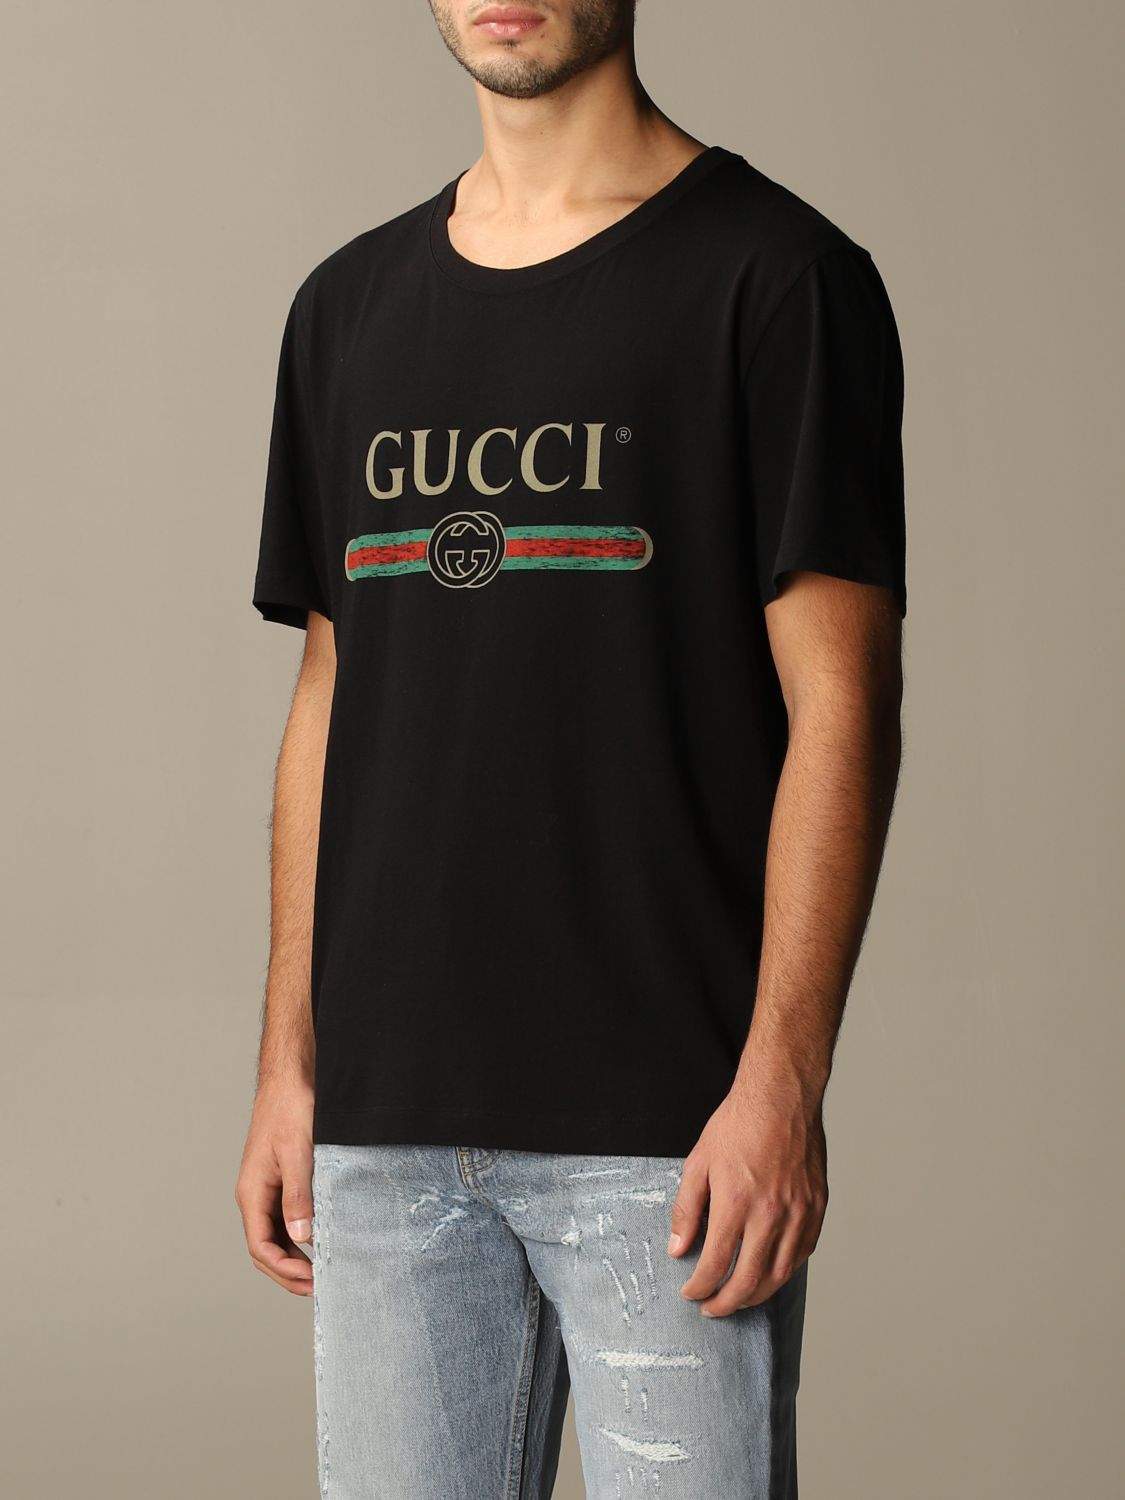 GUCCI: cotton t-shirt with vintage logo | T-Shirt Gucci Men Black | T ...